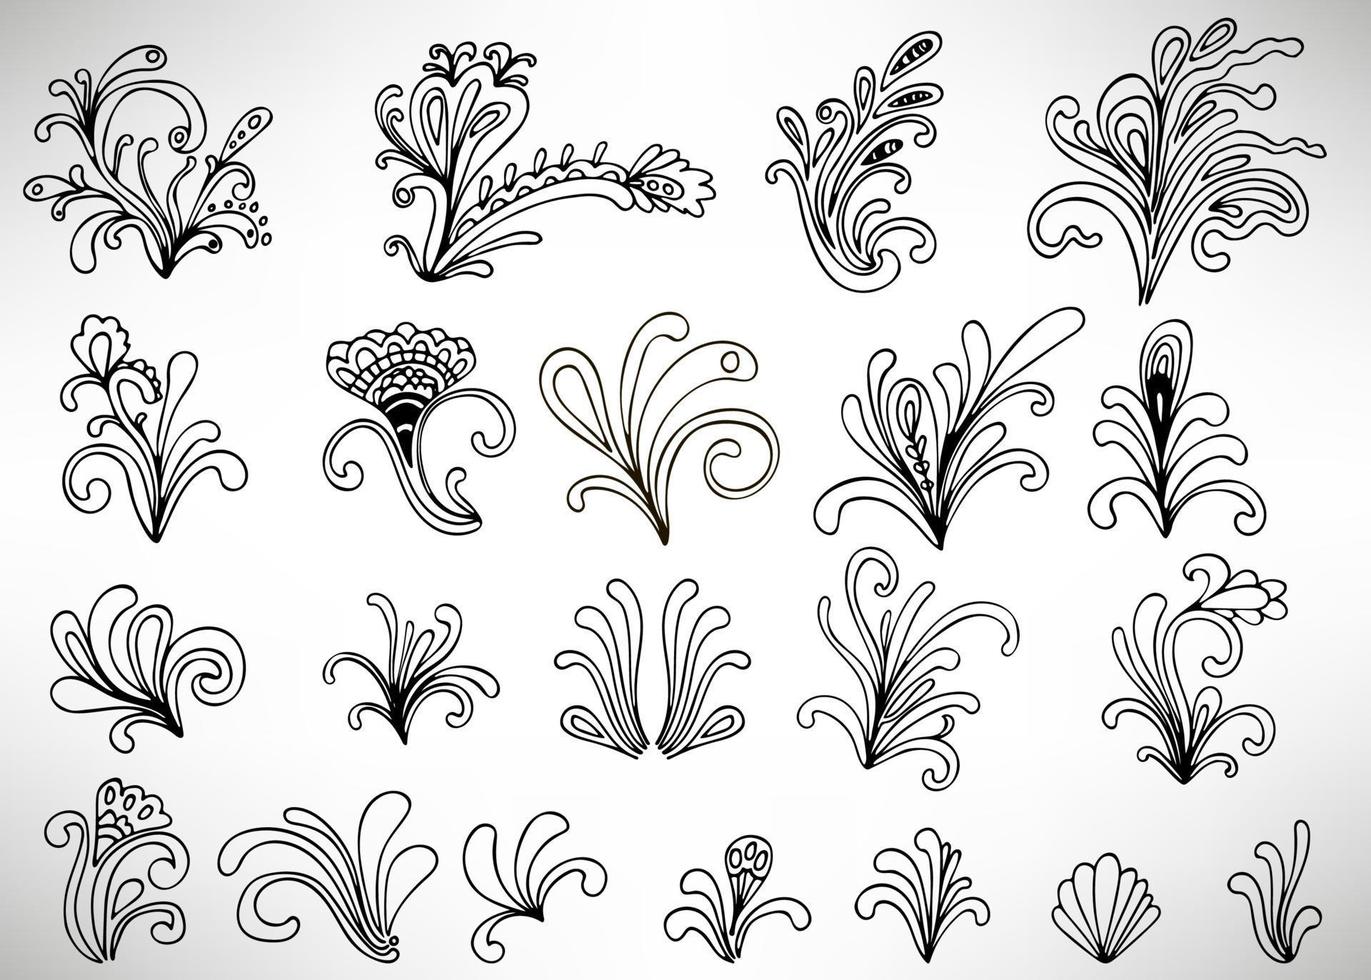 Satz von schwarzen Doodle-Blumenelementen mit Blumen, Locken, Zweigen und Blättern isoliert auf weißem Hintergrund. Damastelemente, kalligraphische Formen. vektor